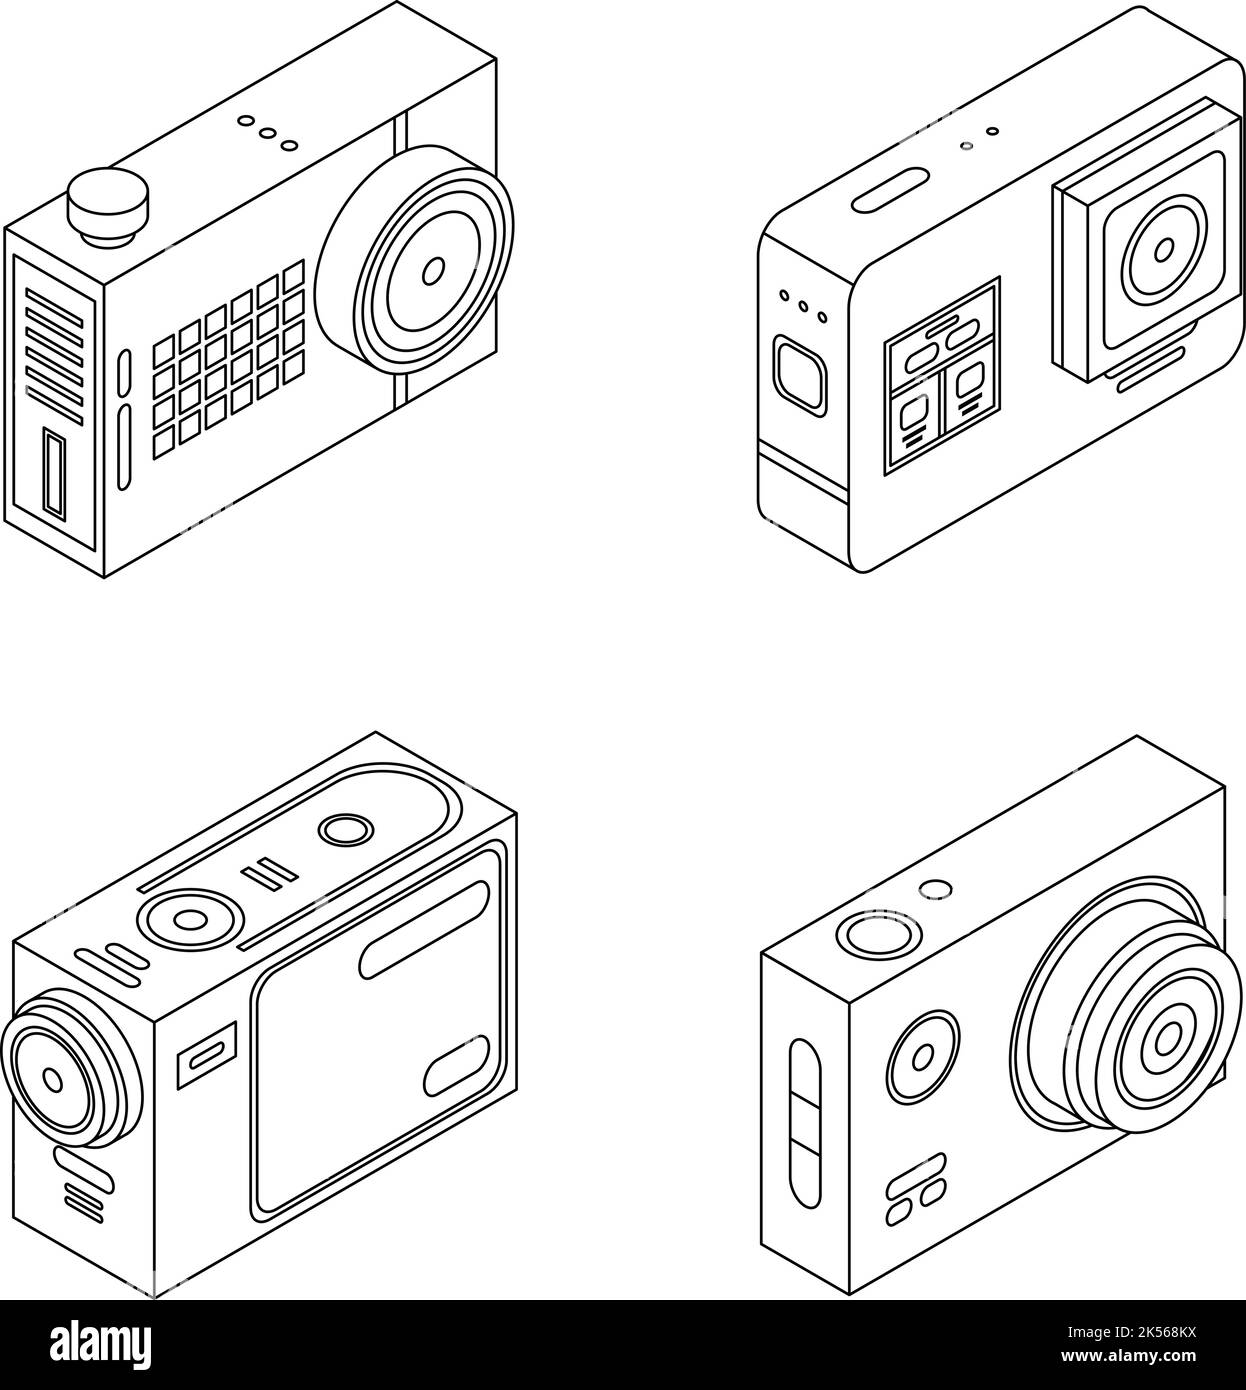 Icone Action camera impostate. Insieme isometrico di icone vettoriali di Action camera, con contorno isolato su sfondo bianco Illustrazione Vettoriale